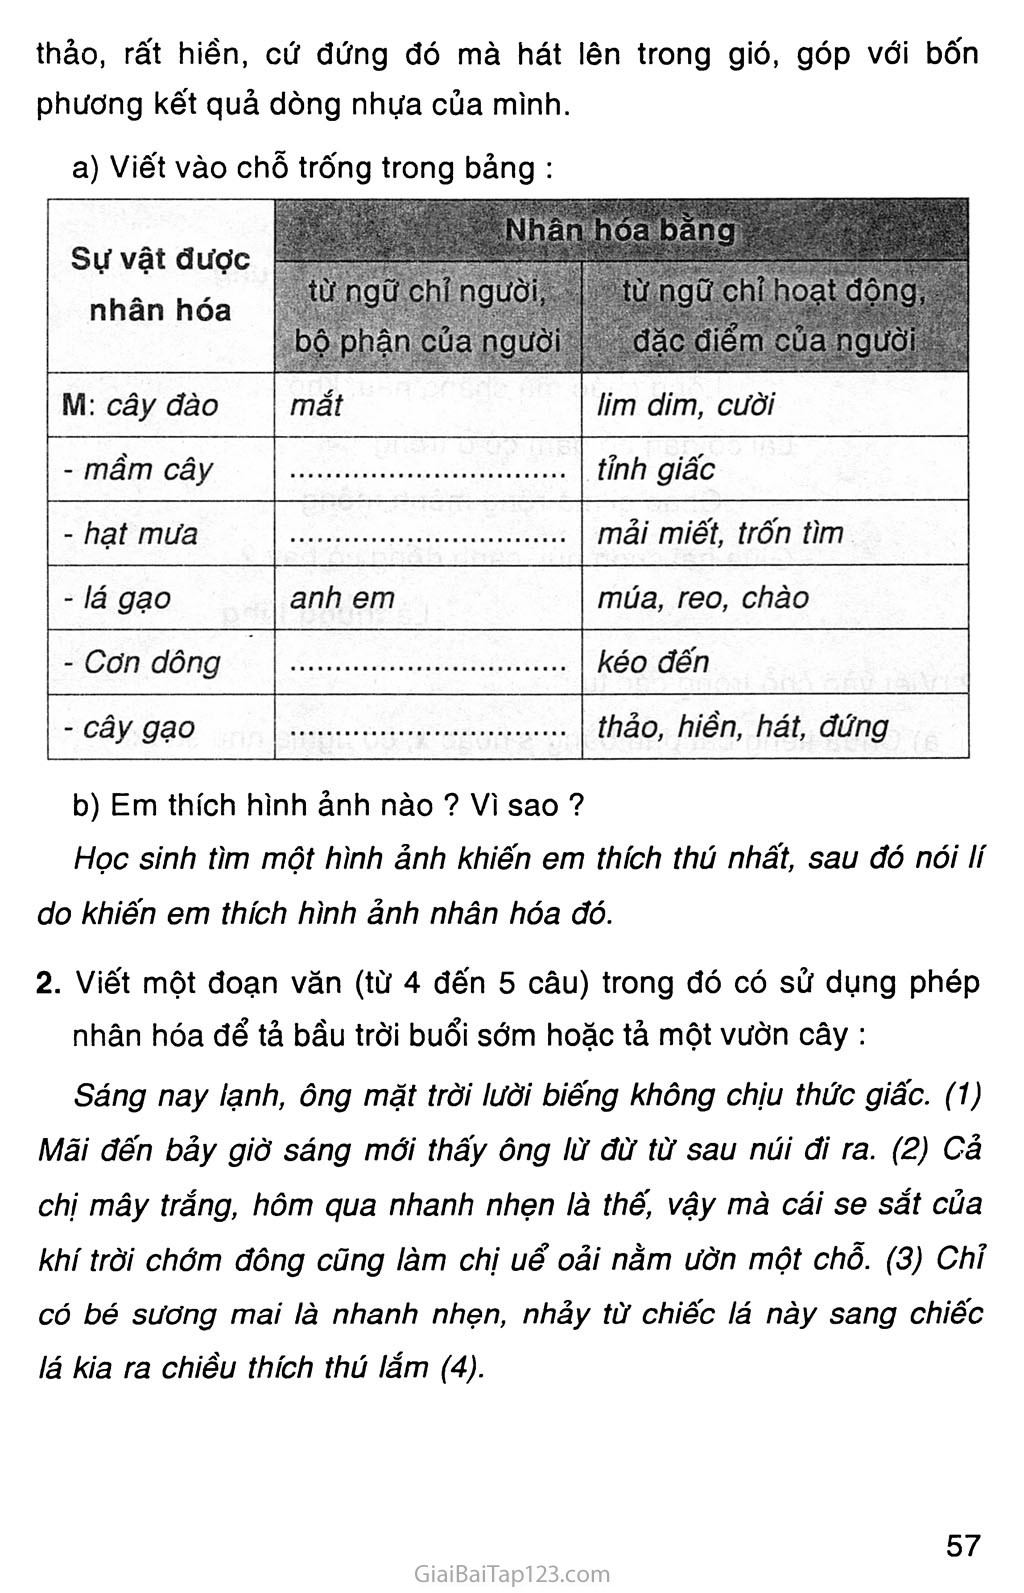 Bạn đang tìm bài tập Tiếng Việt thú vị để rèn luyện kỹ năng ngôn ngữ của mình? Hãy đến với hình ảnh này để thử sức mình với những câu hỏi thú vị và cải thiện khả năng Tiếng Việt của mình ngay lập tức.